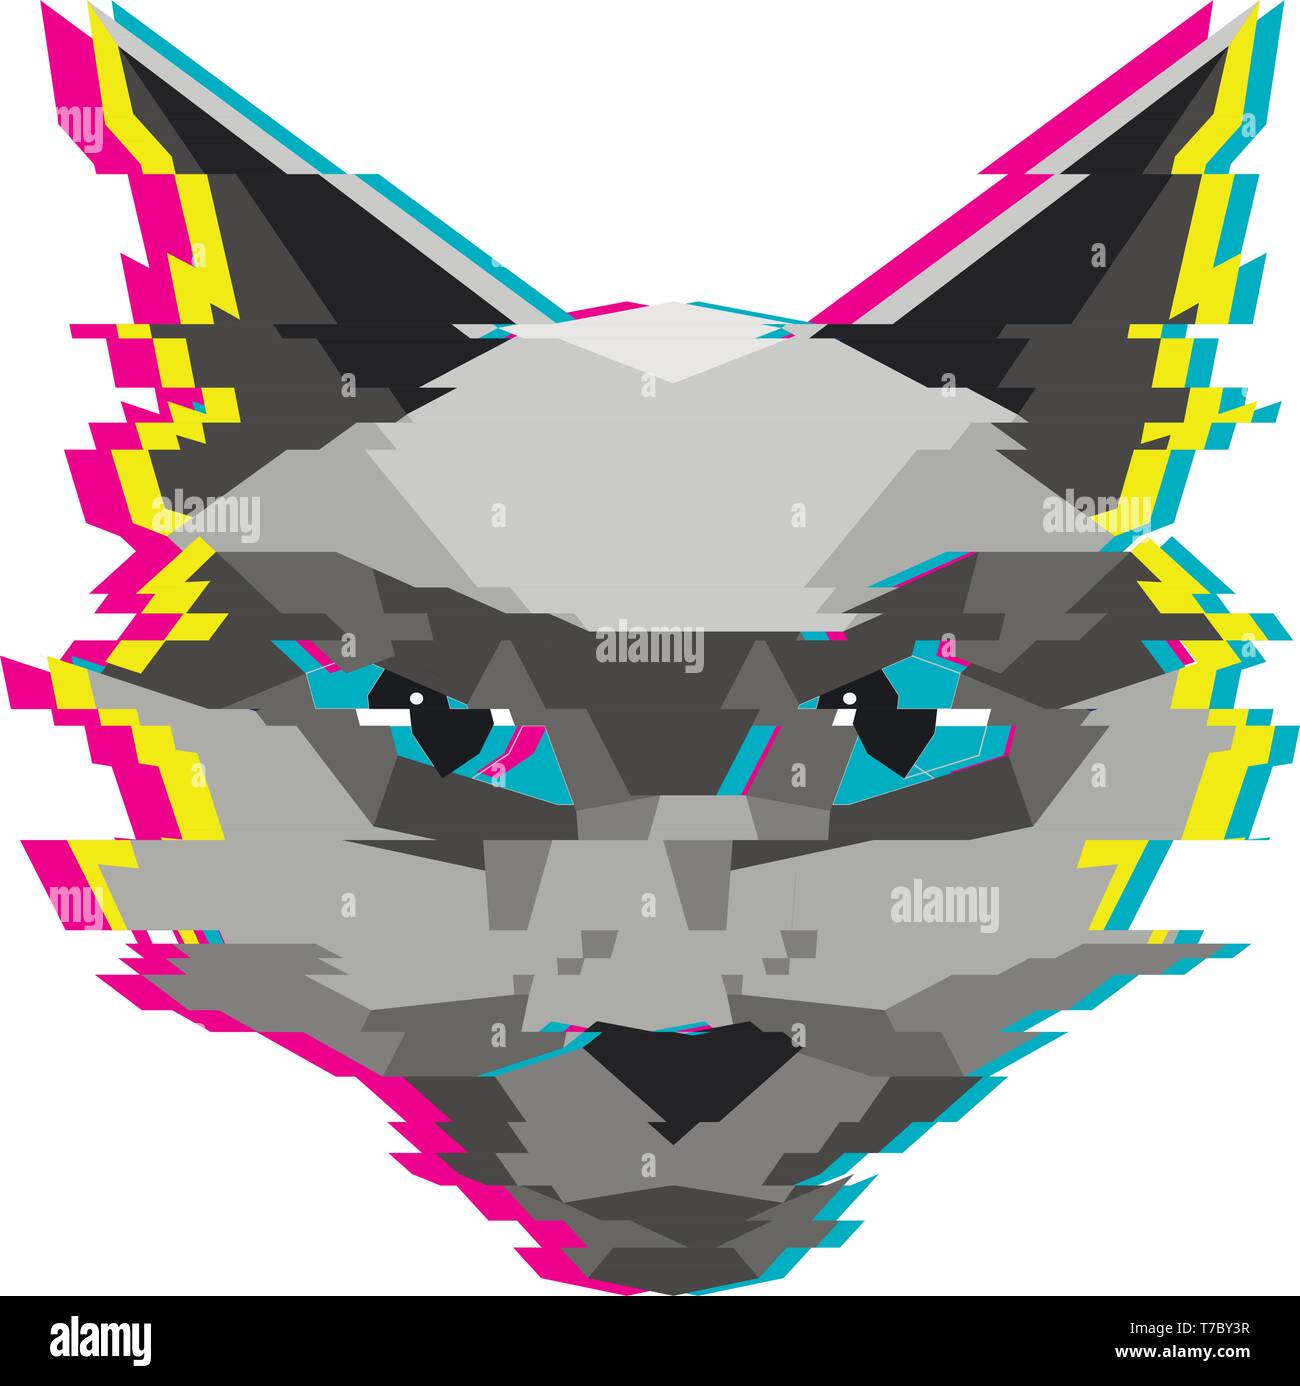 Creative bassa poli cat illustrazione con effetto di glitch. Illustrazione Vettoriale